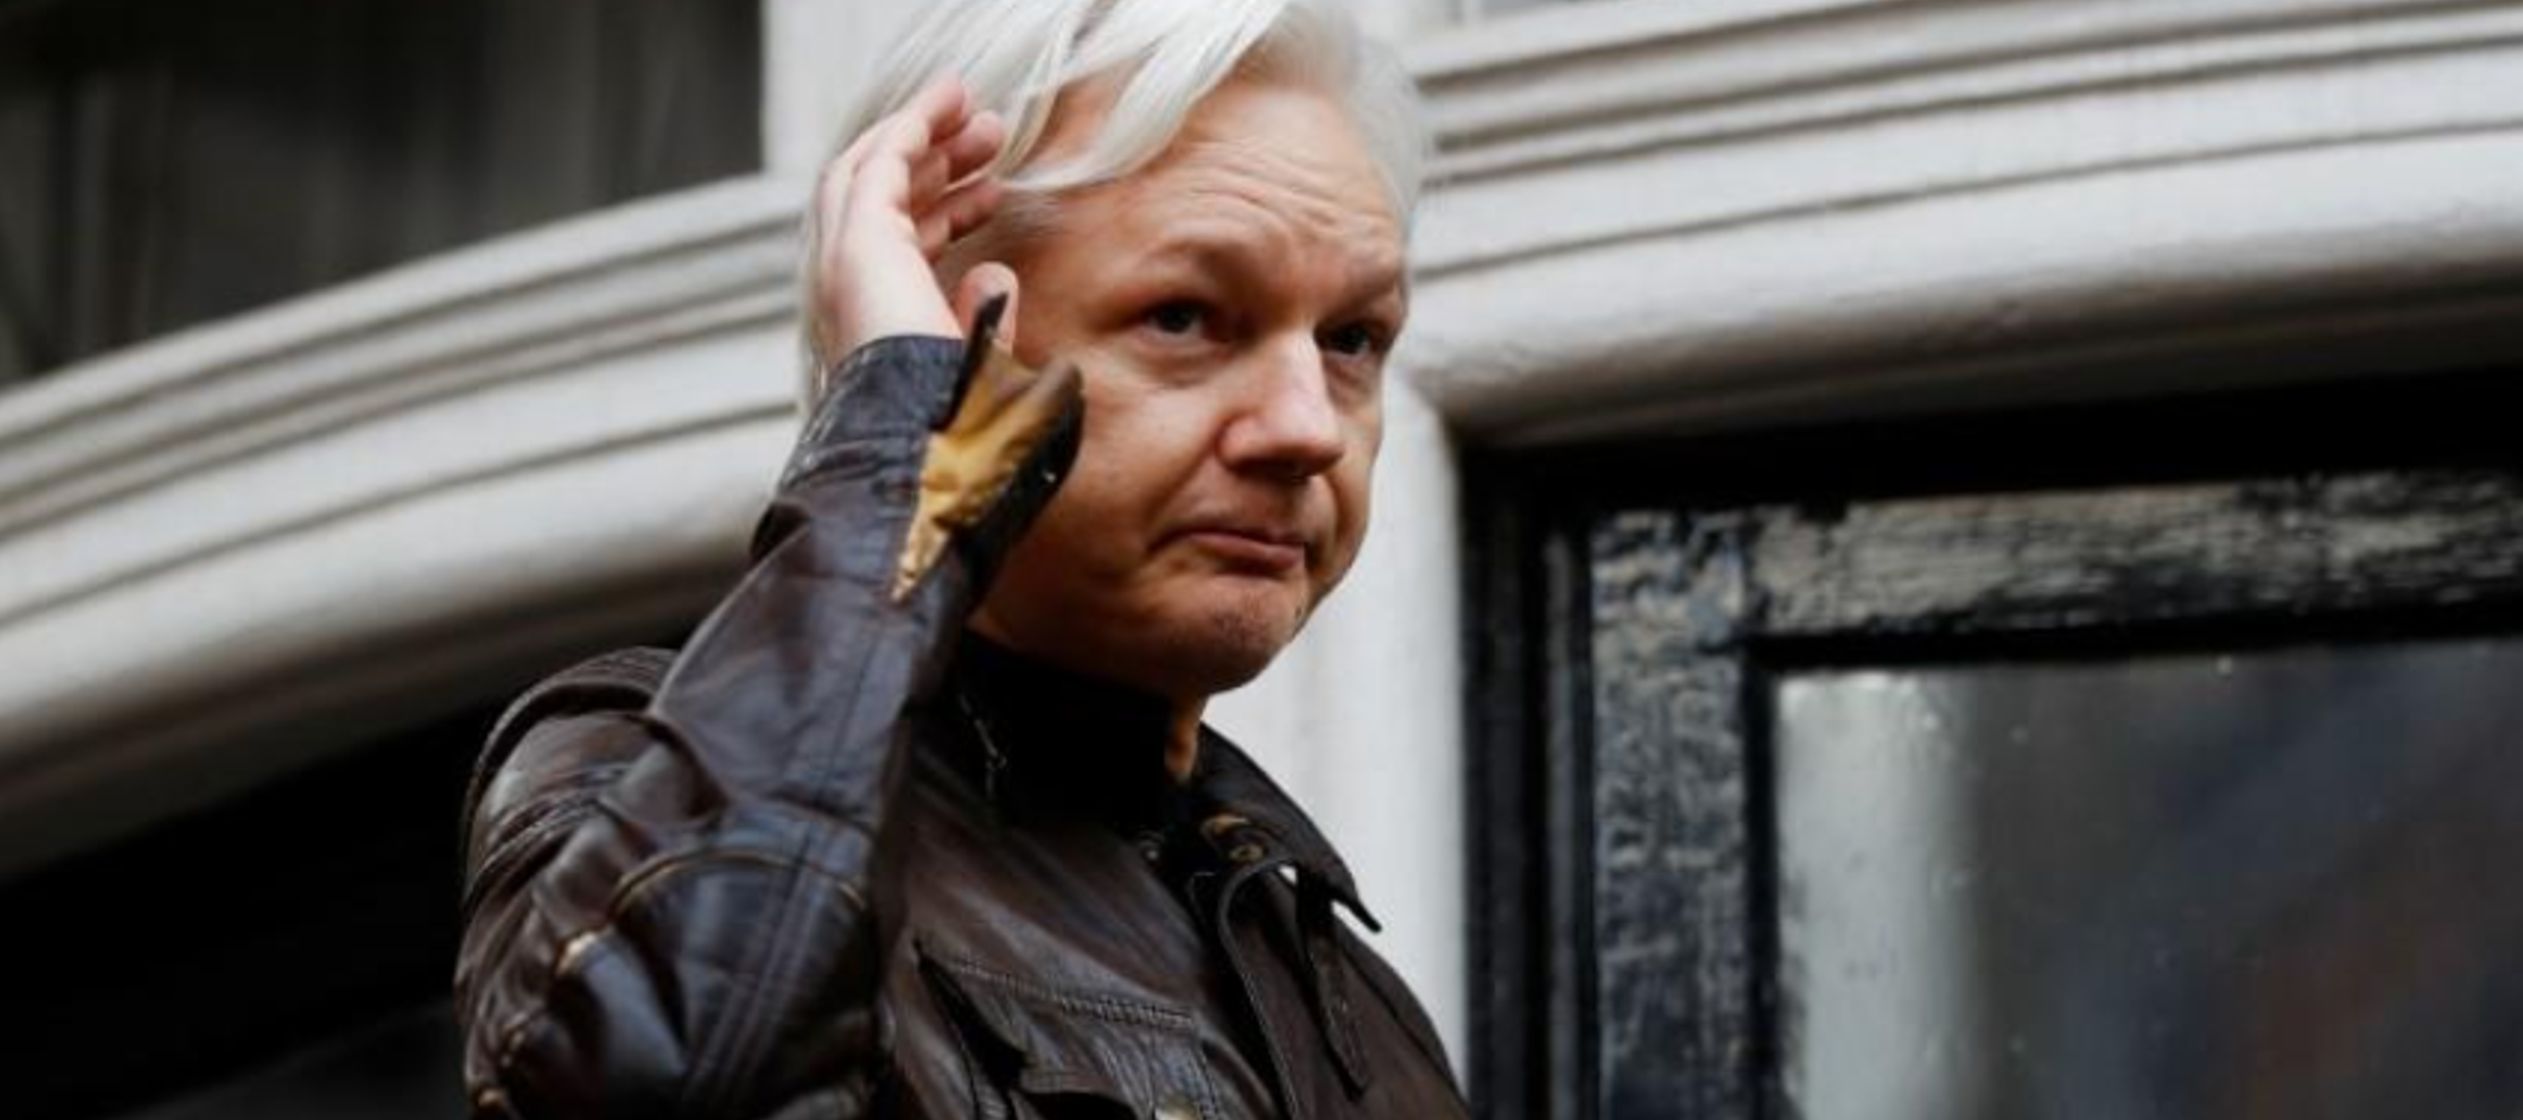 Los abogados de Assange en Estados Unidos y Gran Bretaña no respondieron a la solicitud de...